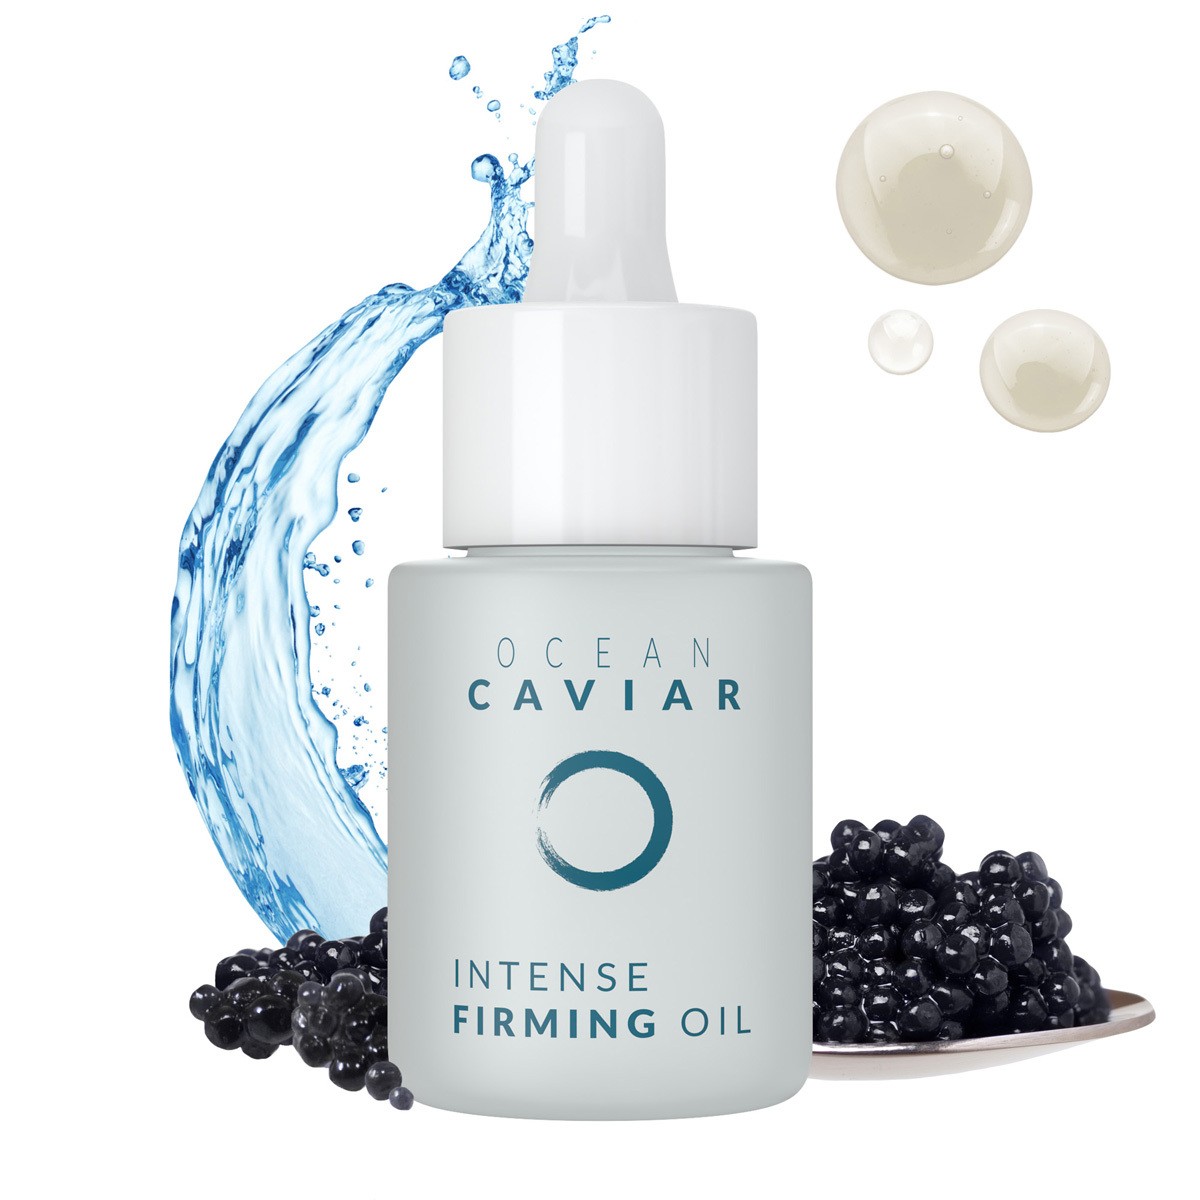 Ocean Caviar Firming Oil